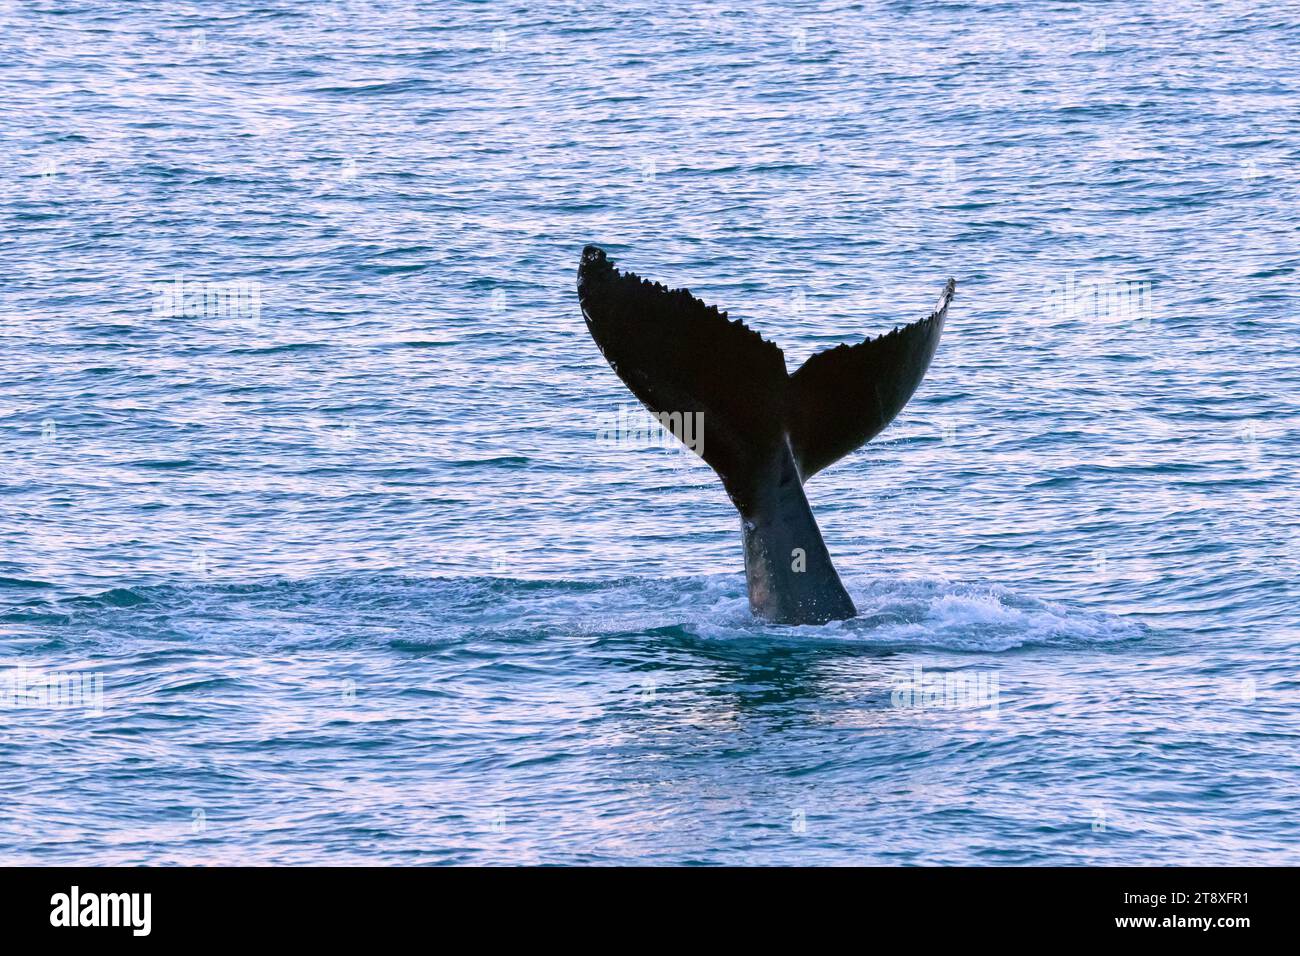 Baleine à bosse (Megaptera novaeangliae) levant ses fards de queue pour plonger dans l'océan Arctique pour se nourrir, Spitsbergen / Svalbard Banque D'Images